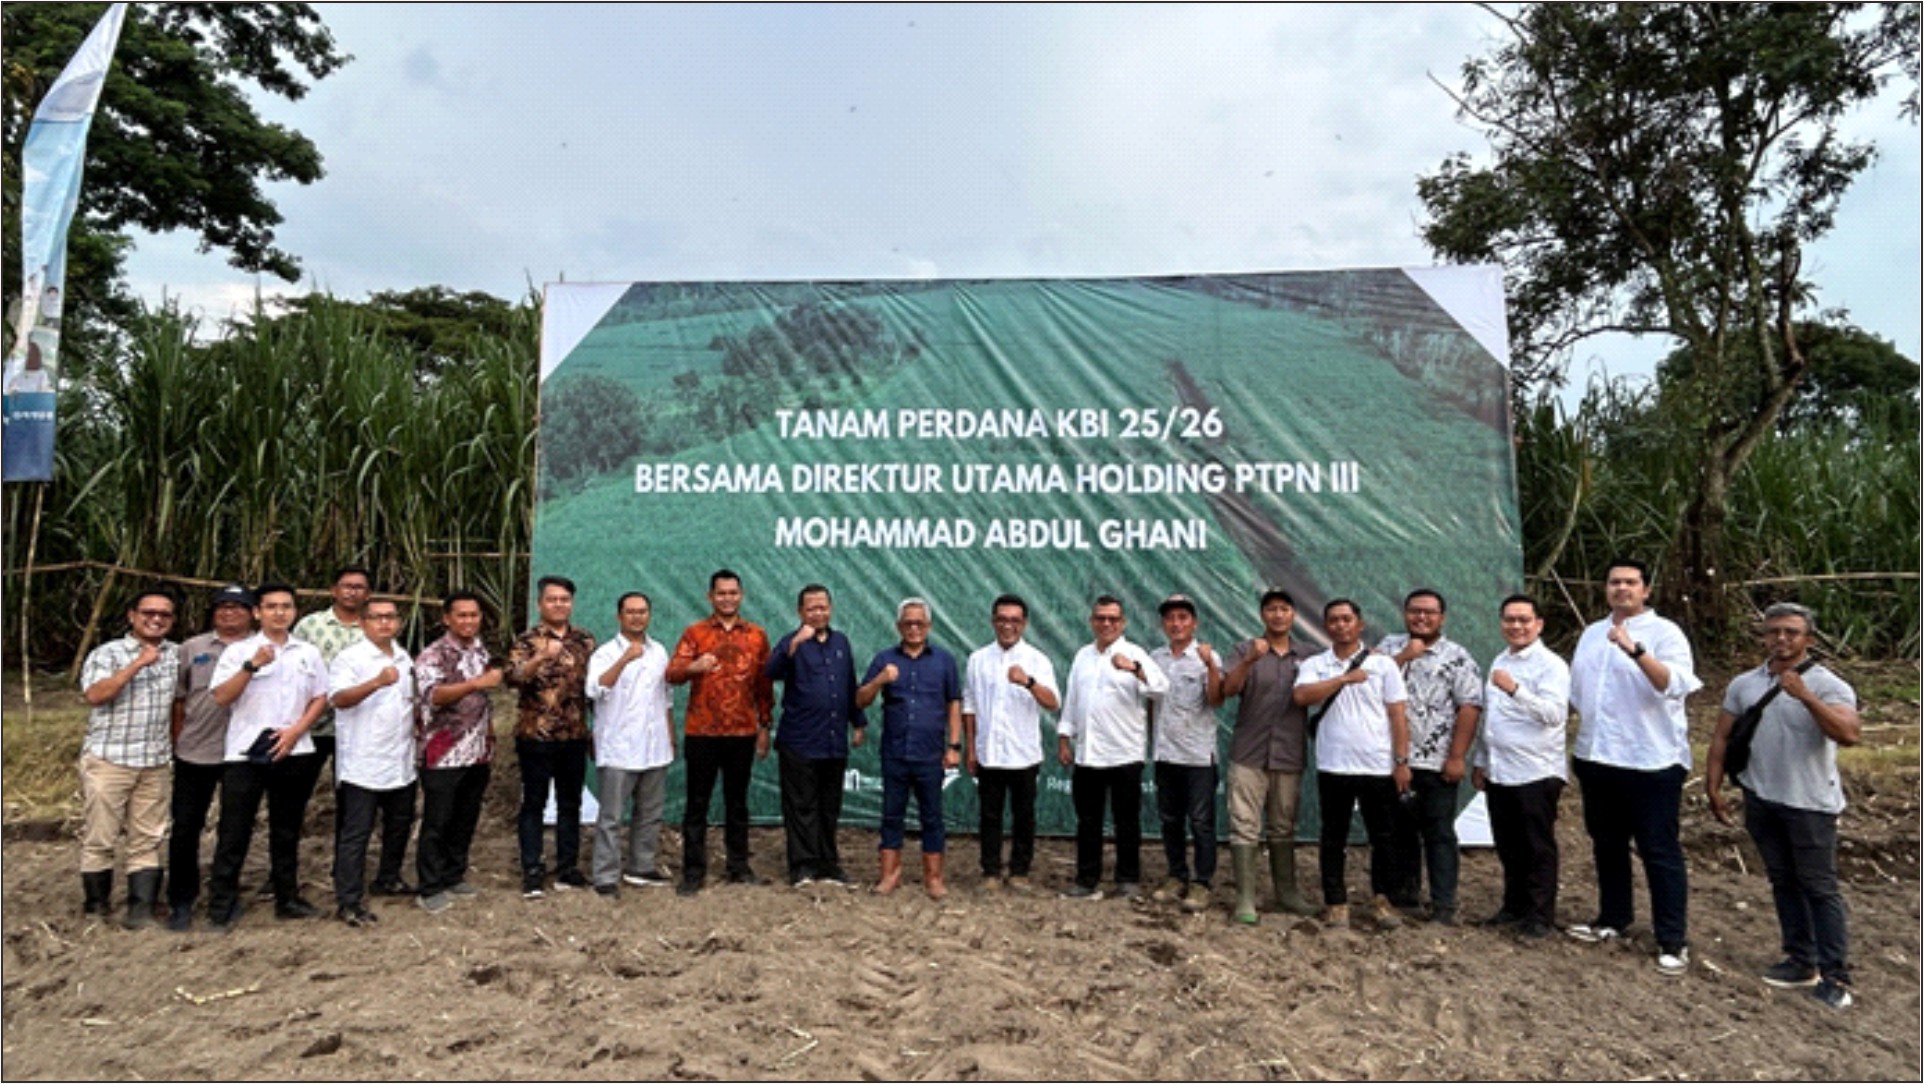 Kunjungan Kerja dan Tanam Perdana Dirut Holding PTPN III (Persero) ke PTPN I Regional 4